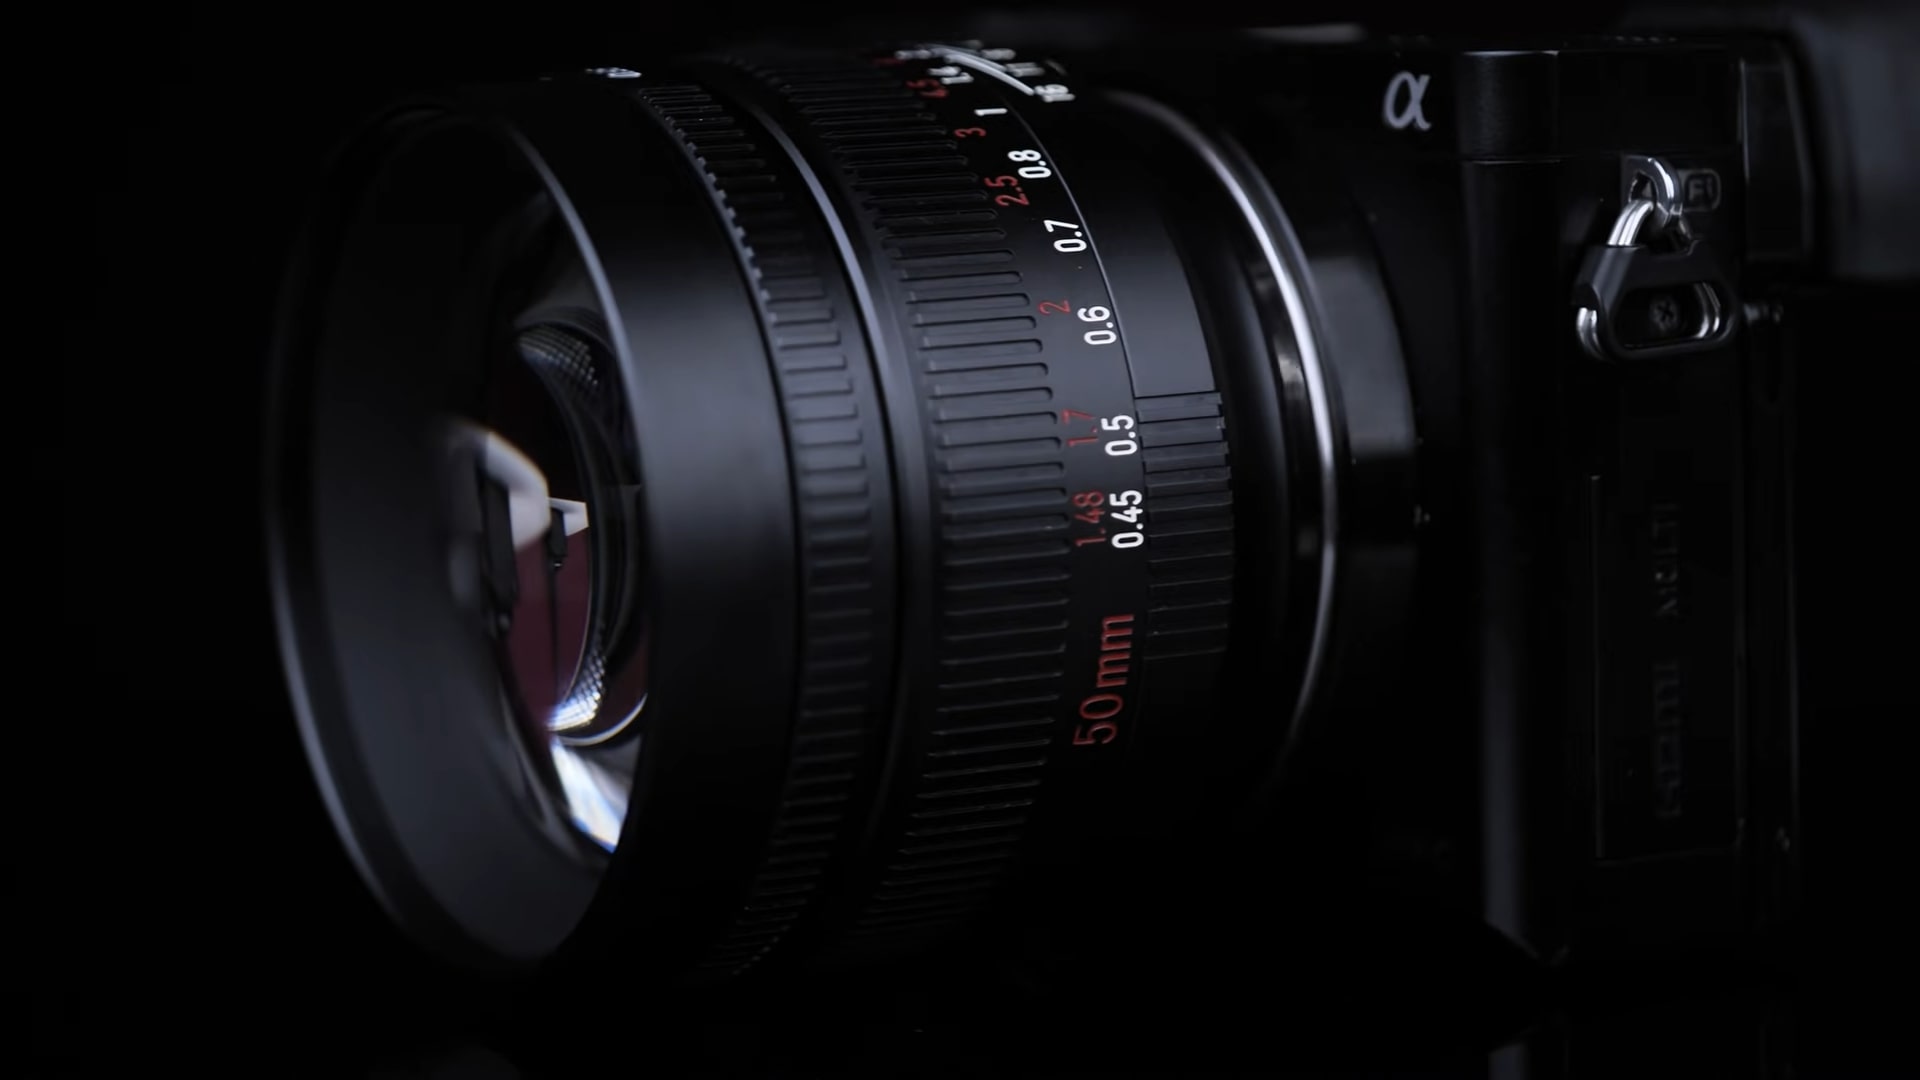 7Artisans sắp ra mắt ống kính 50mm F0.95 cho máy ảnh mirrorless APS-C với giá cực rẻ